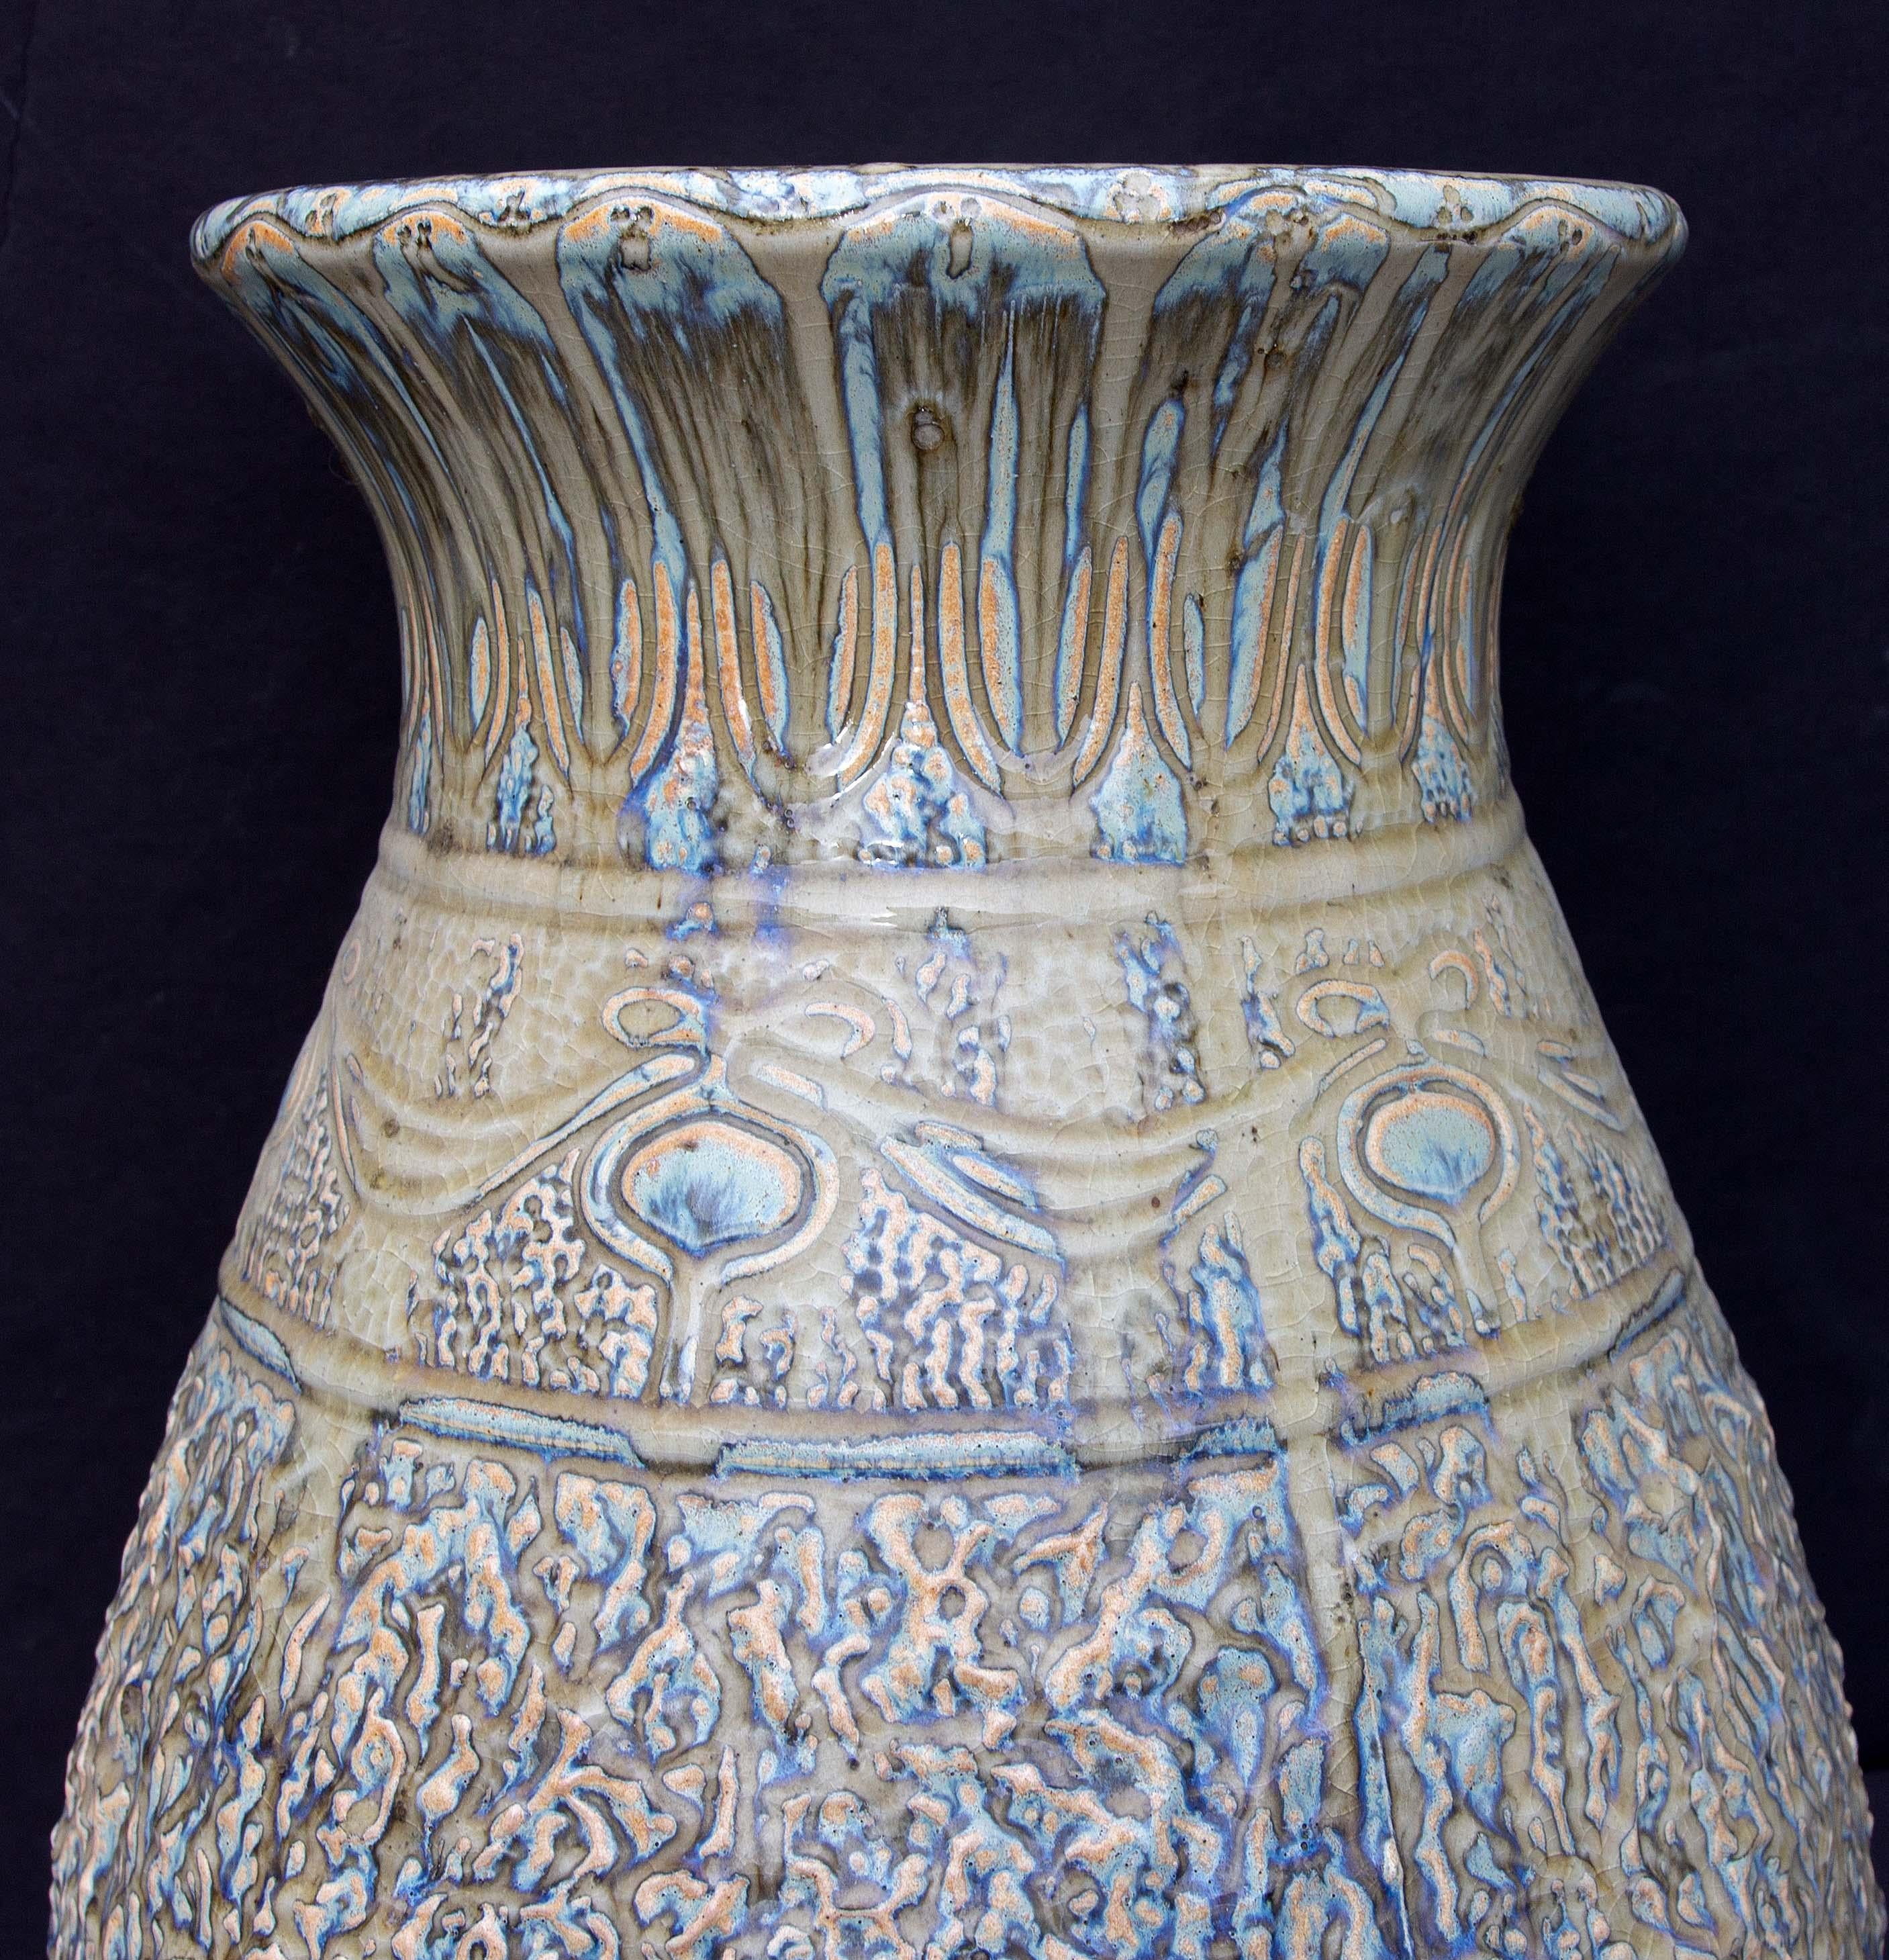 Grand vase de sol antique en poterie d'art. Glaçure à forte teneur en eau. Peut-être belge. Début du 20e siècle. Non marqué.